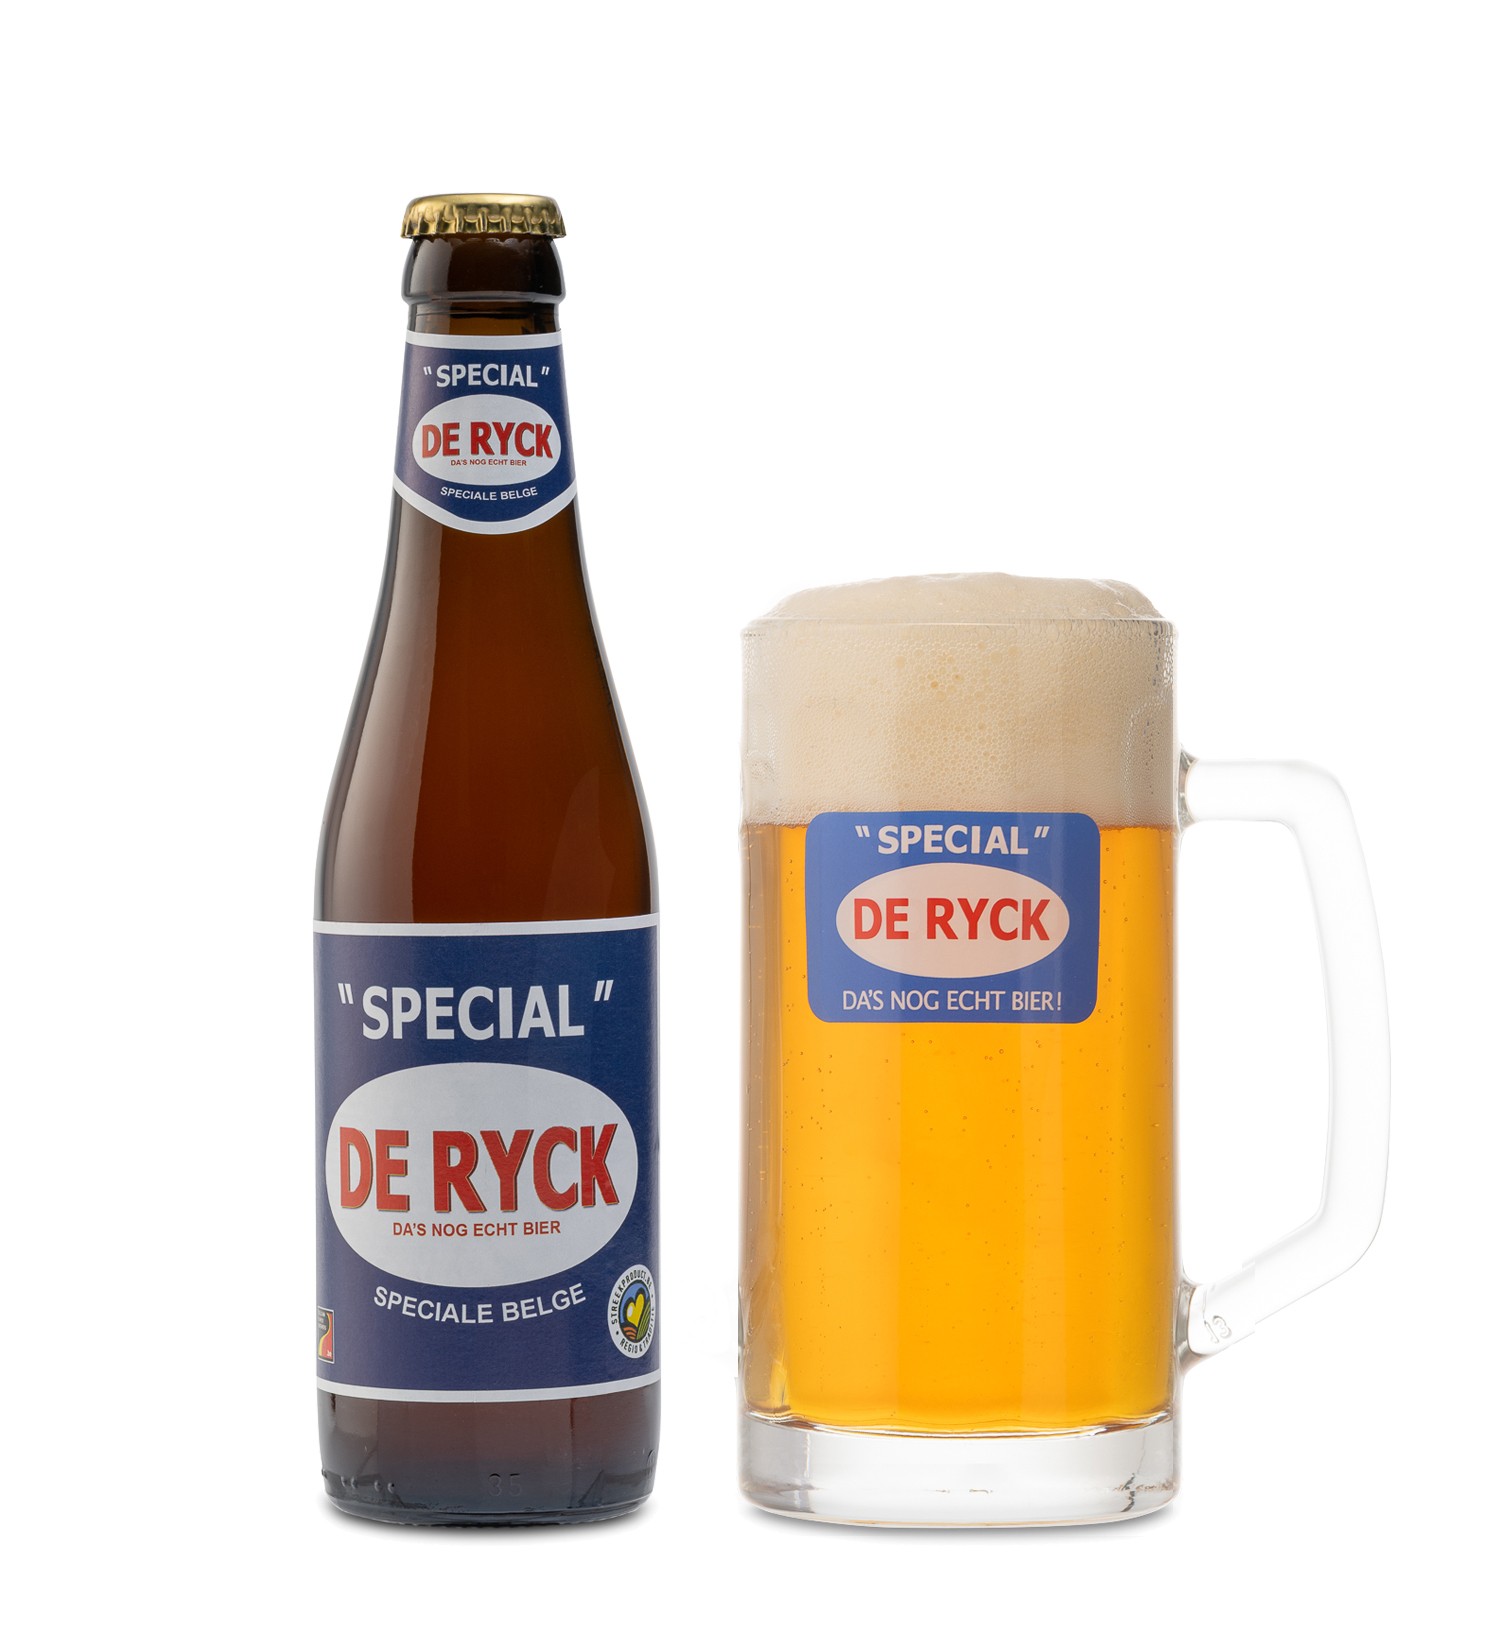 voordelig magneet Snelkoppelingen Spécial" De Ryck bier | Origineel Speciale Belge Ale, fris en pittig